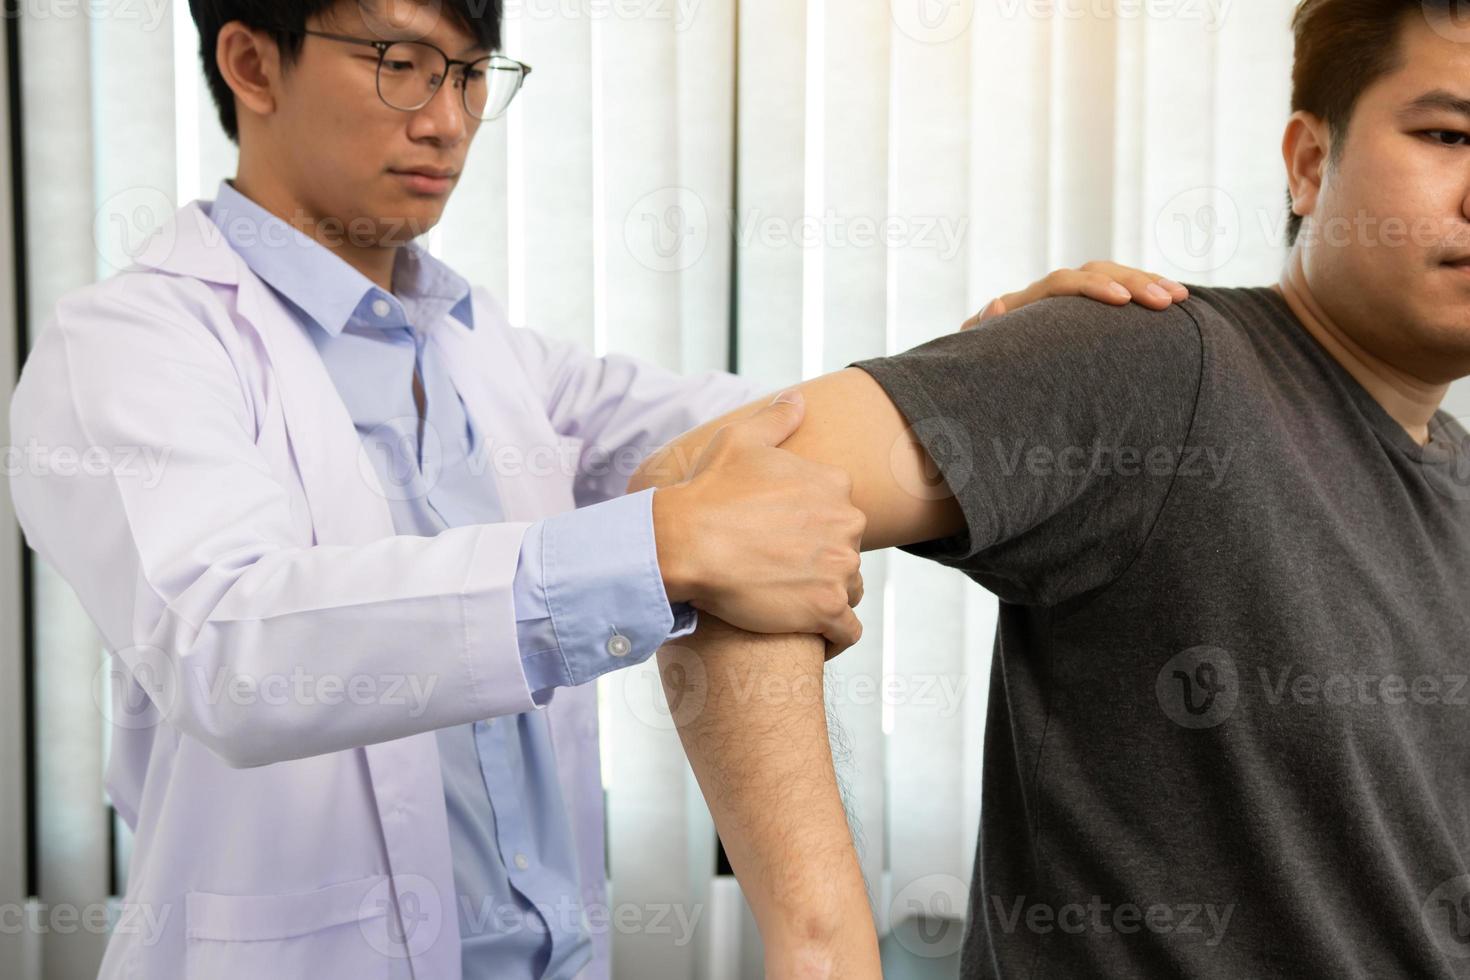 fysiotherapeuten drukken op de schouder van de patiënt om te controleren op pijn. foto